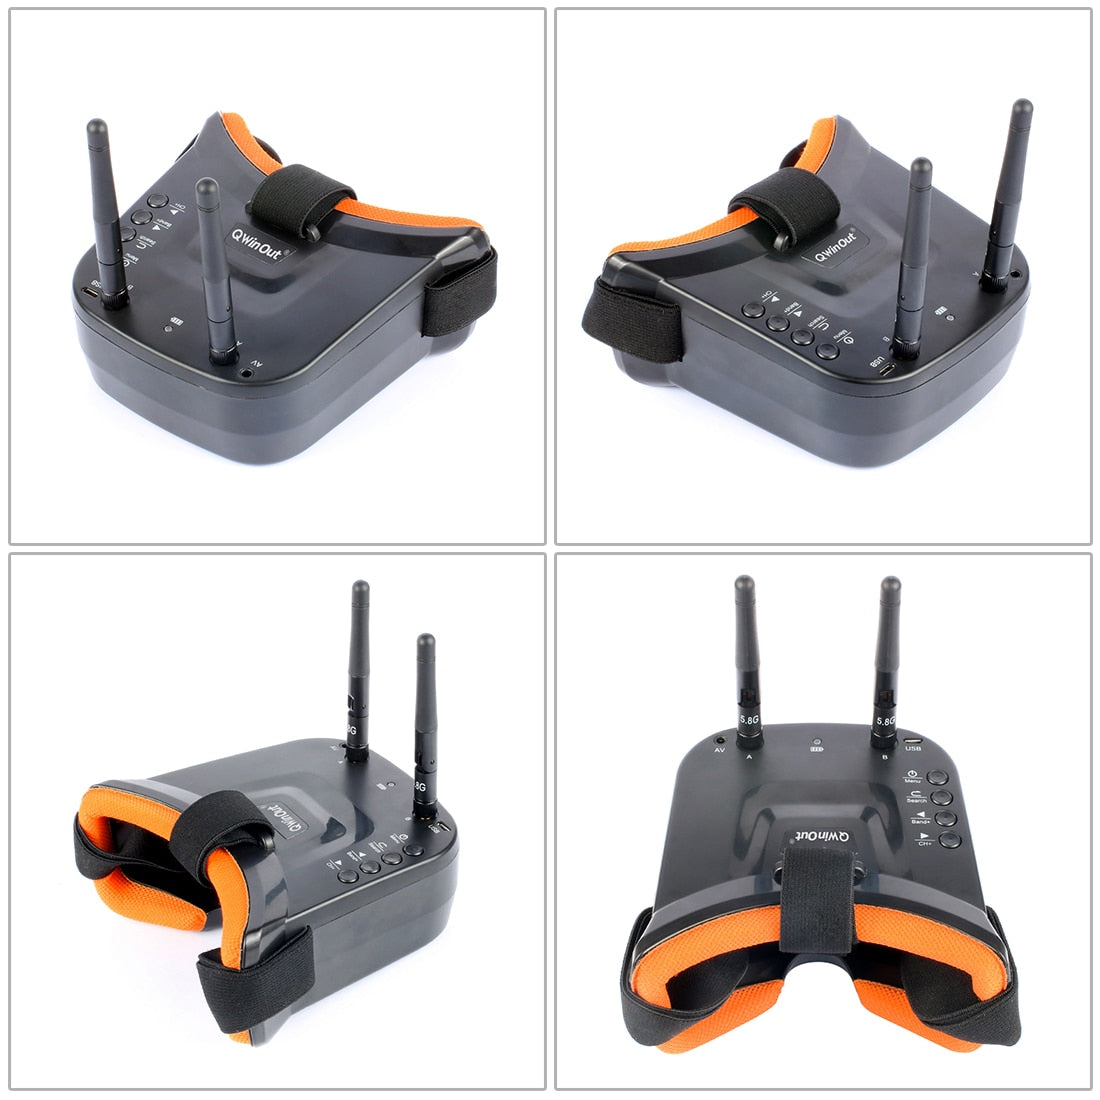 JMT T100 DIY FPV Racing Drone Toothpick Full Kit - w/ 1200TVL PAL / NTSC Cam/FS I6 Remote Controller/5.8G FPV LST-009 FPV Goggles